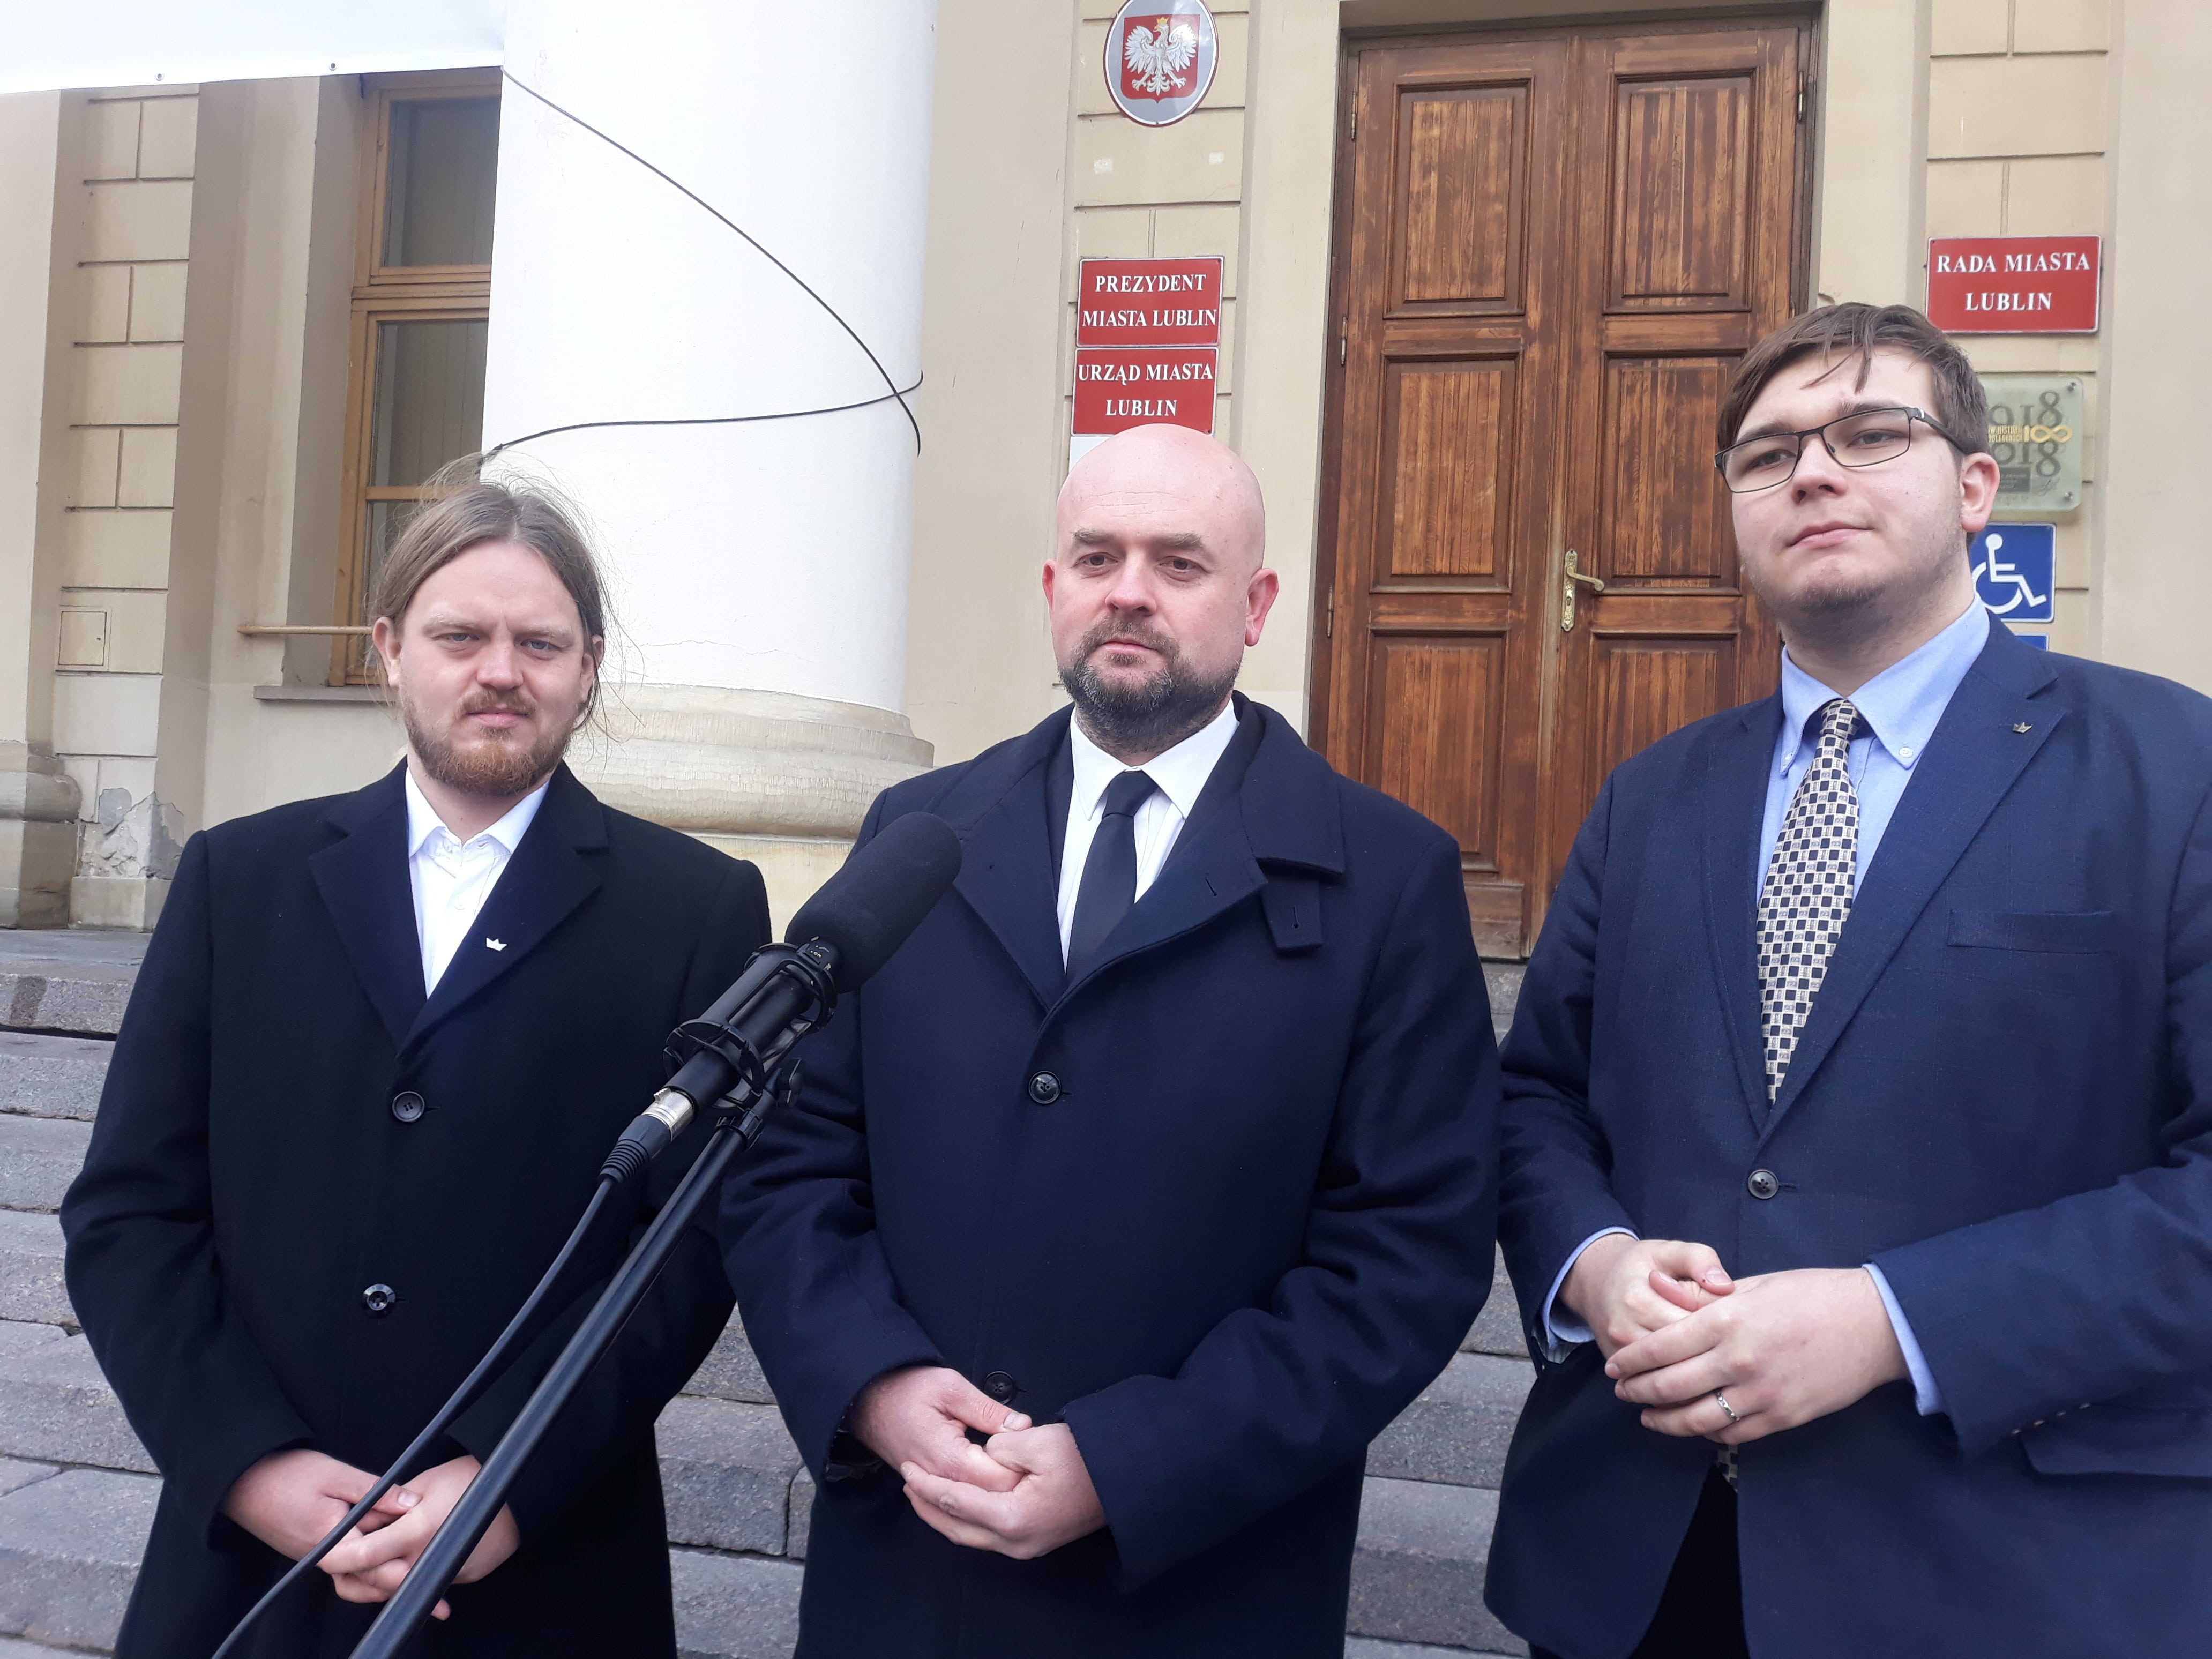 Lublin: Prezydent miasta chce wesprzeć finansowo ośrodek dla imigrantów. Partia KORWiN: To zagranie nie fair w stosunku do mieszkańców  - Zdjęcie główne